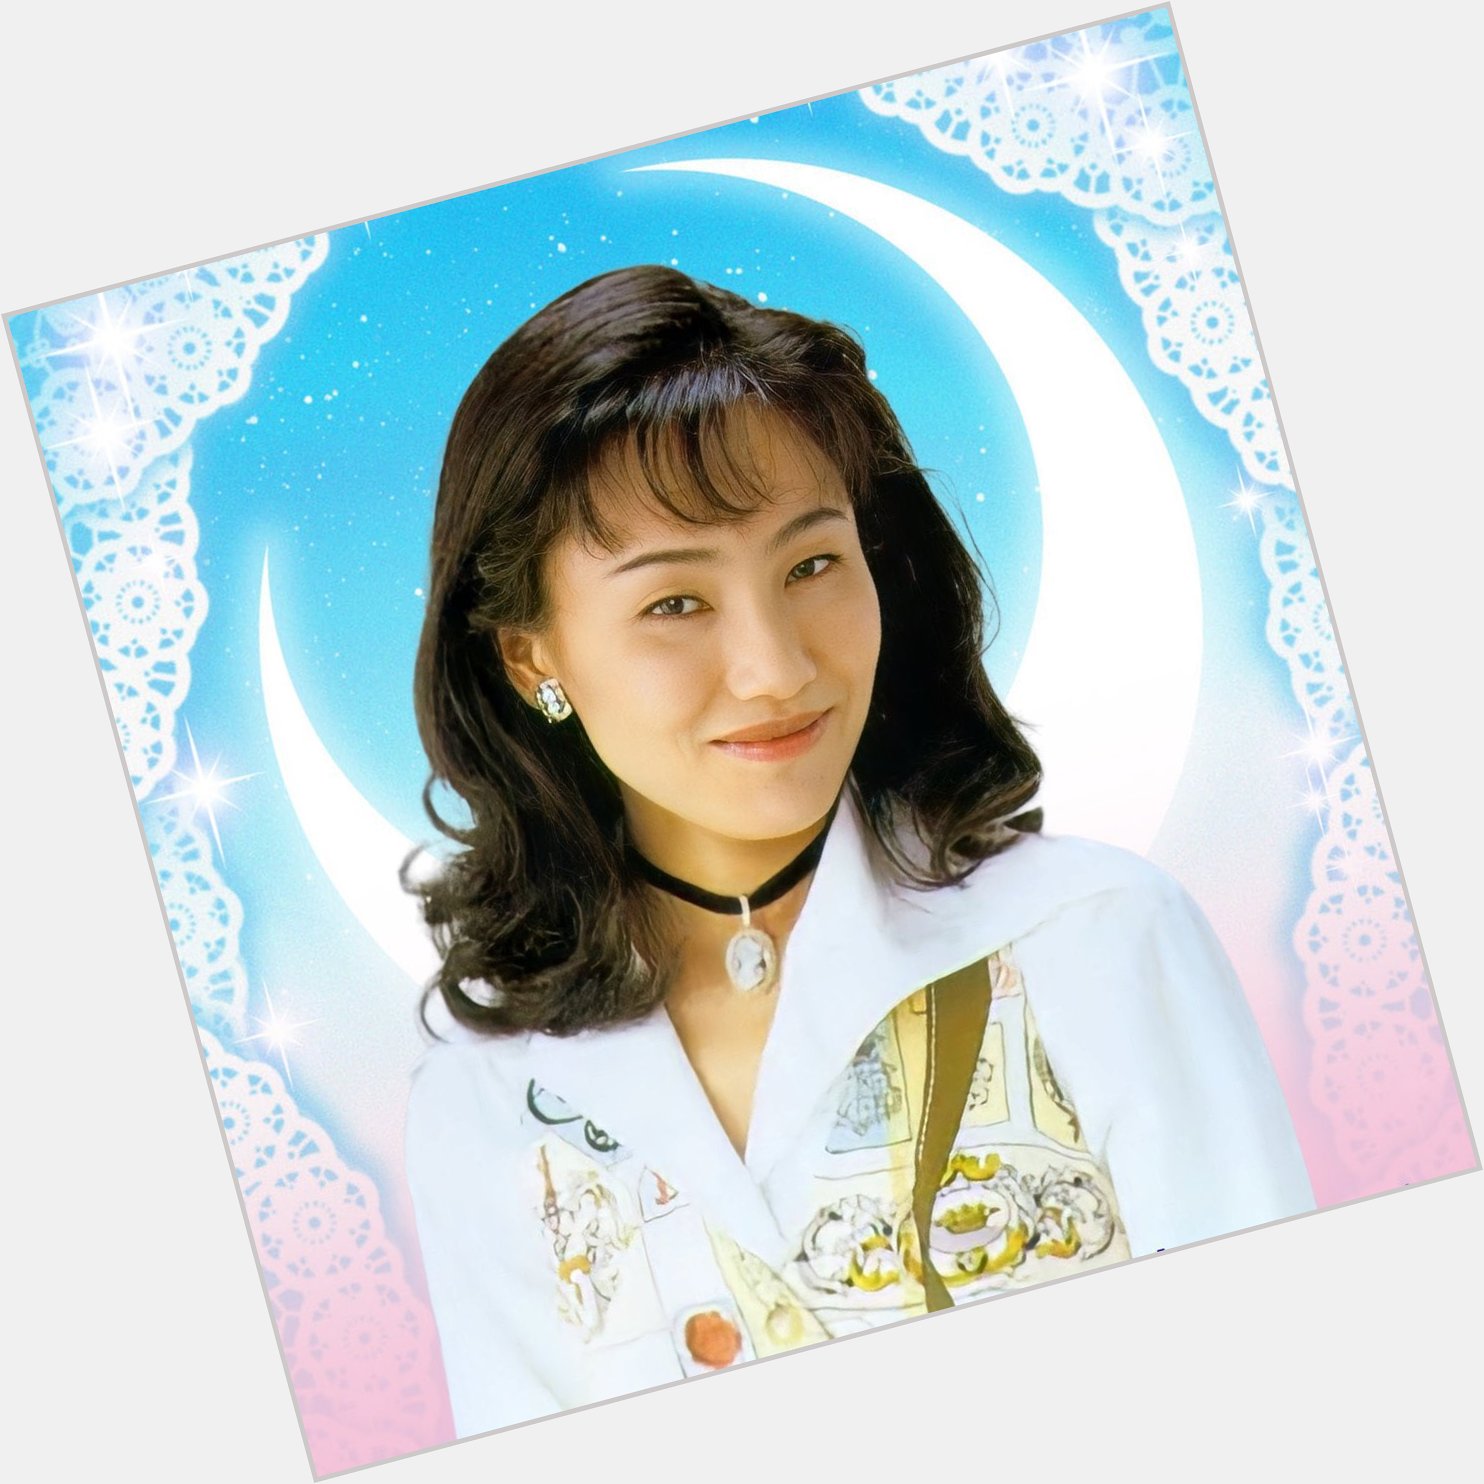 SailorMoonGerman - HAPPY BIRTHDAY NAOKO 🎁🎈 Heute feiert Naoko Takeuchi,  die Erfinderin unserer Lieblingsserie, ihren 54. Geburtstag und wir sagen:  Alles Gute, Princess Naoko! 🎉 Durch ihre Zeichenfeder entstand vor über 29